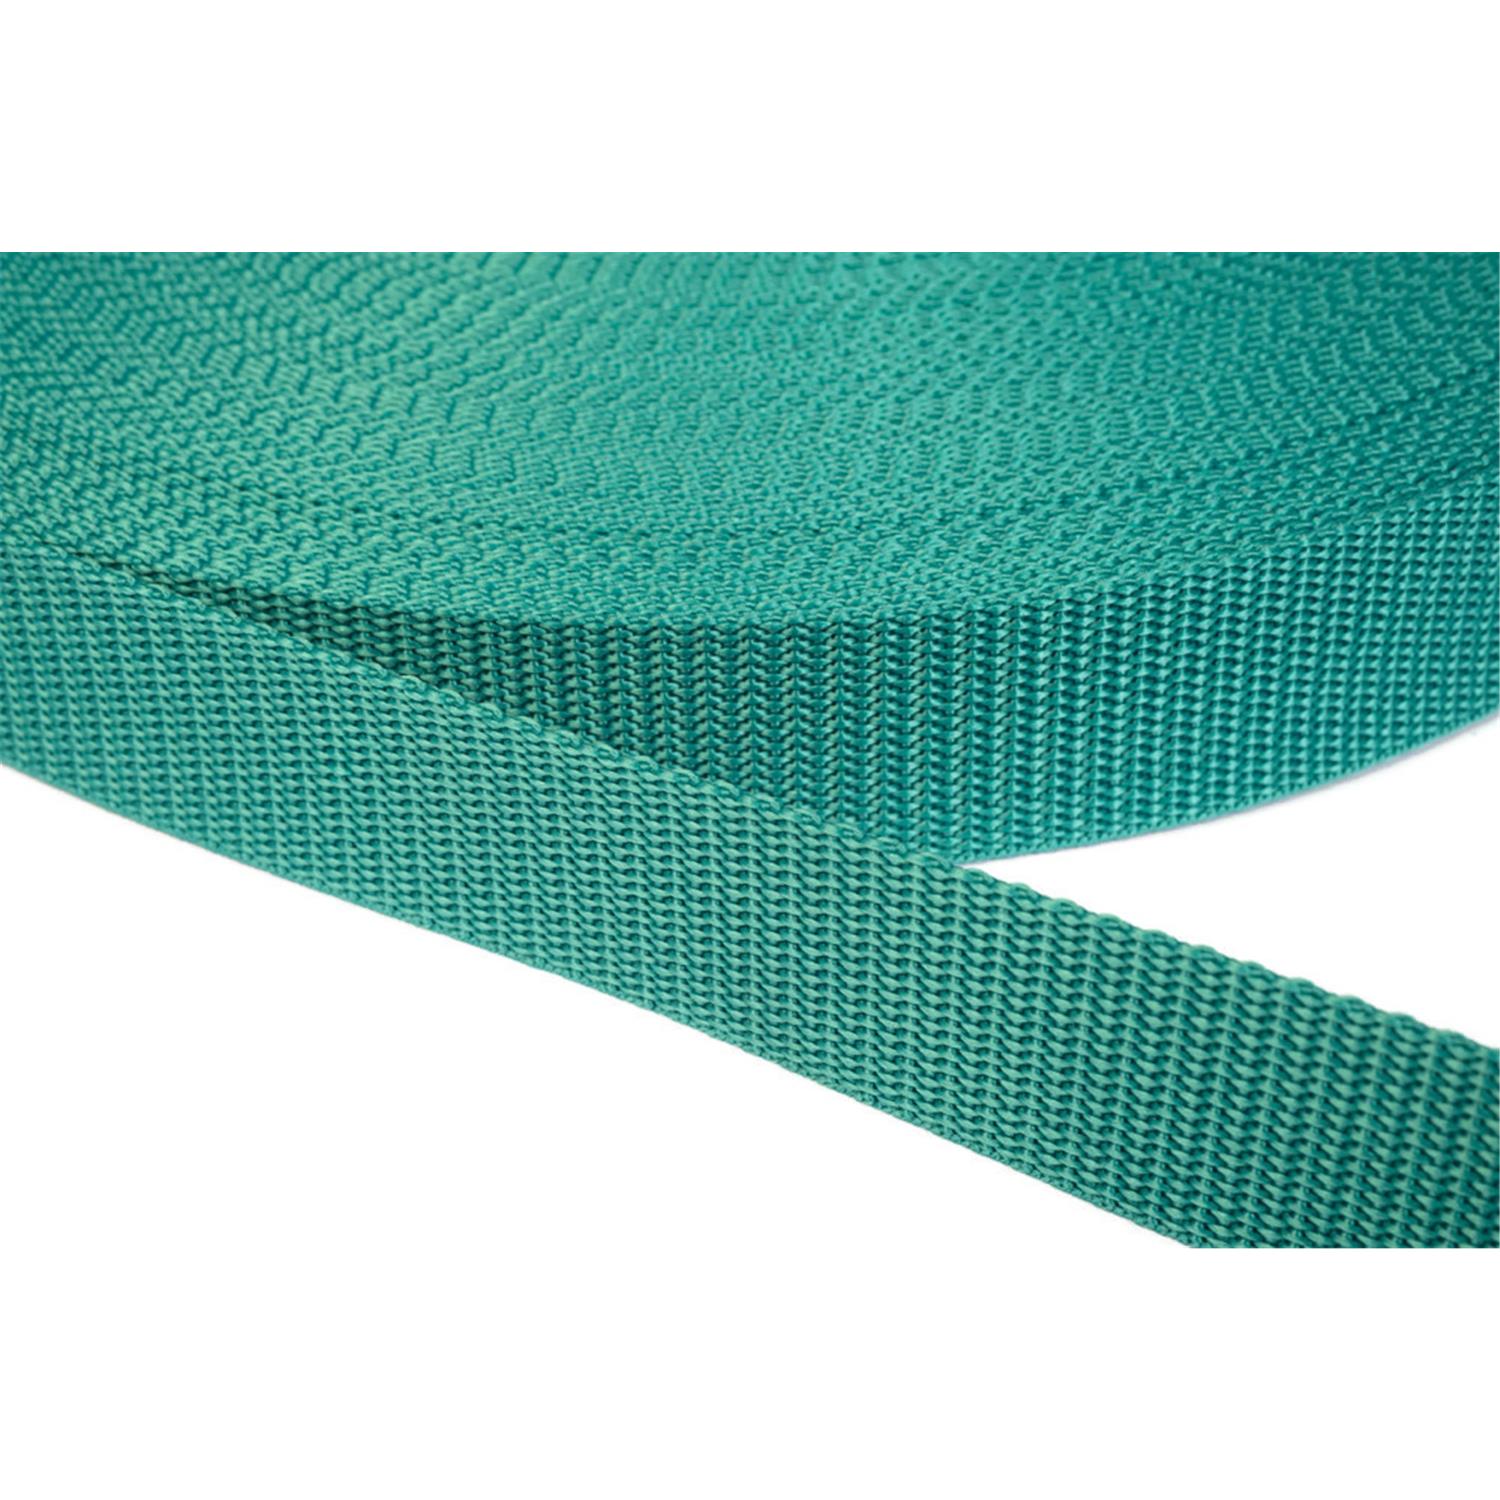 Gurtband 10mm breit aus Polypropylen in 41 Farben 31 - smaragdgrün 12 Meter